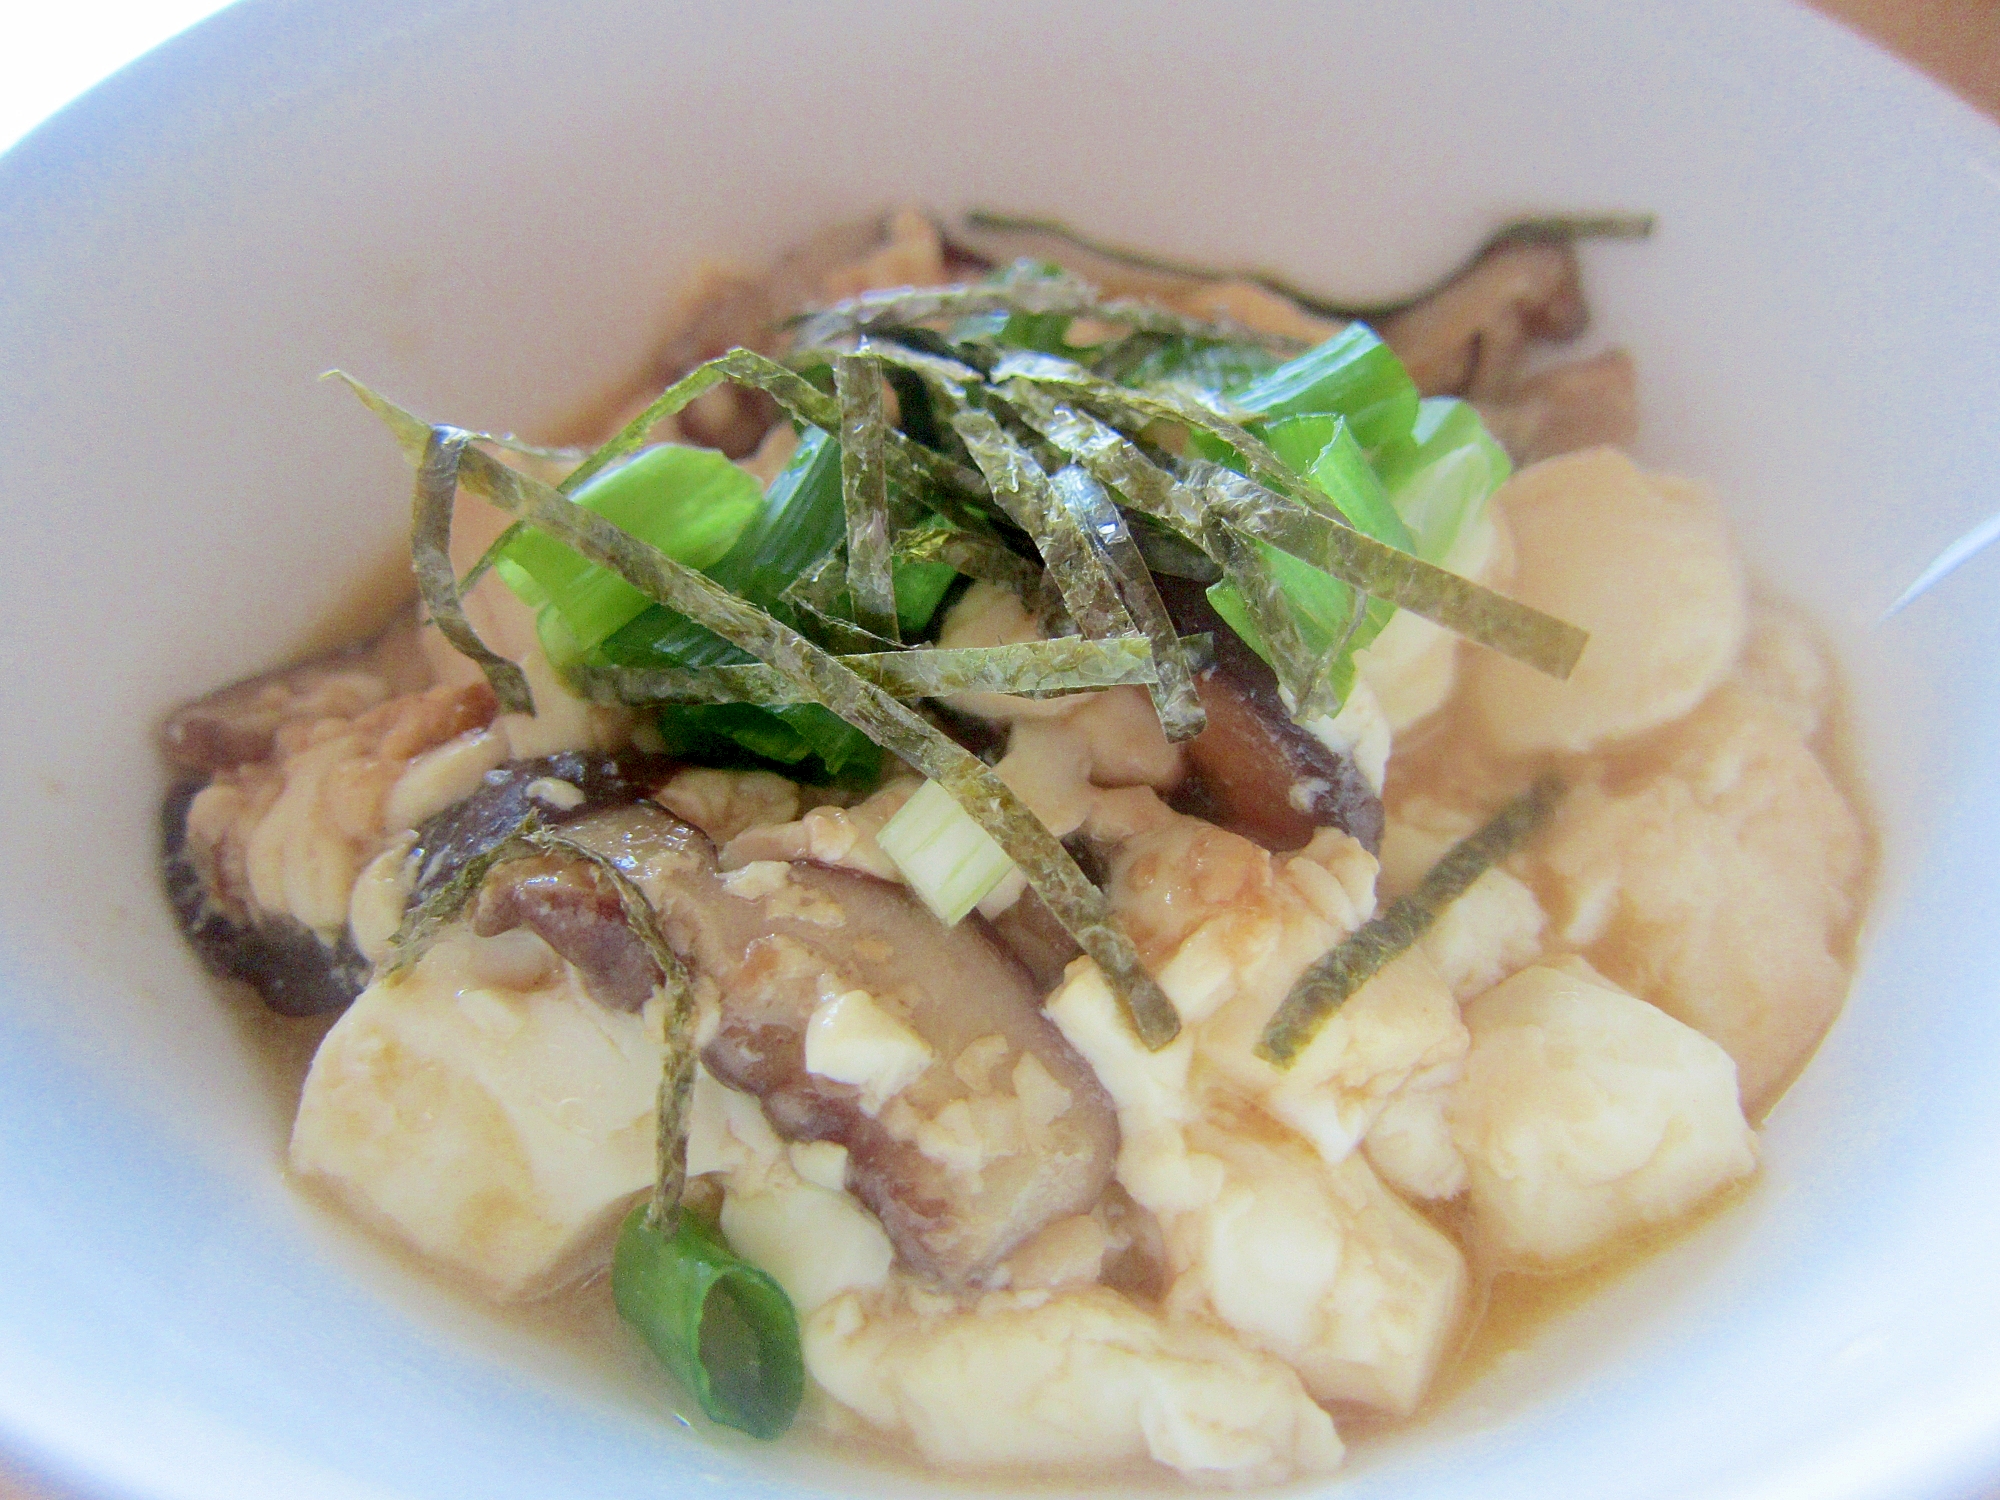 絹豆腐と椎茸のバター醤油グリル